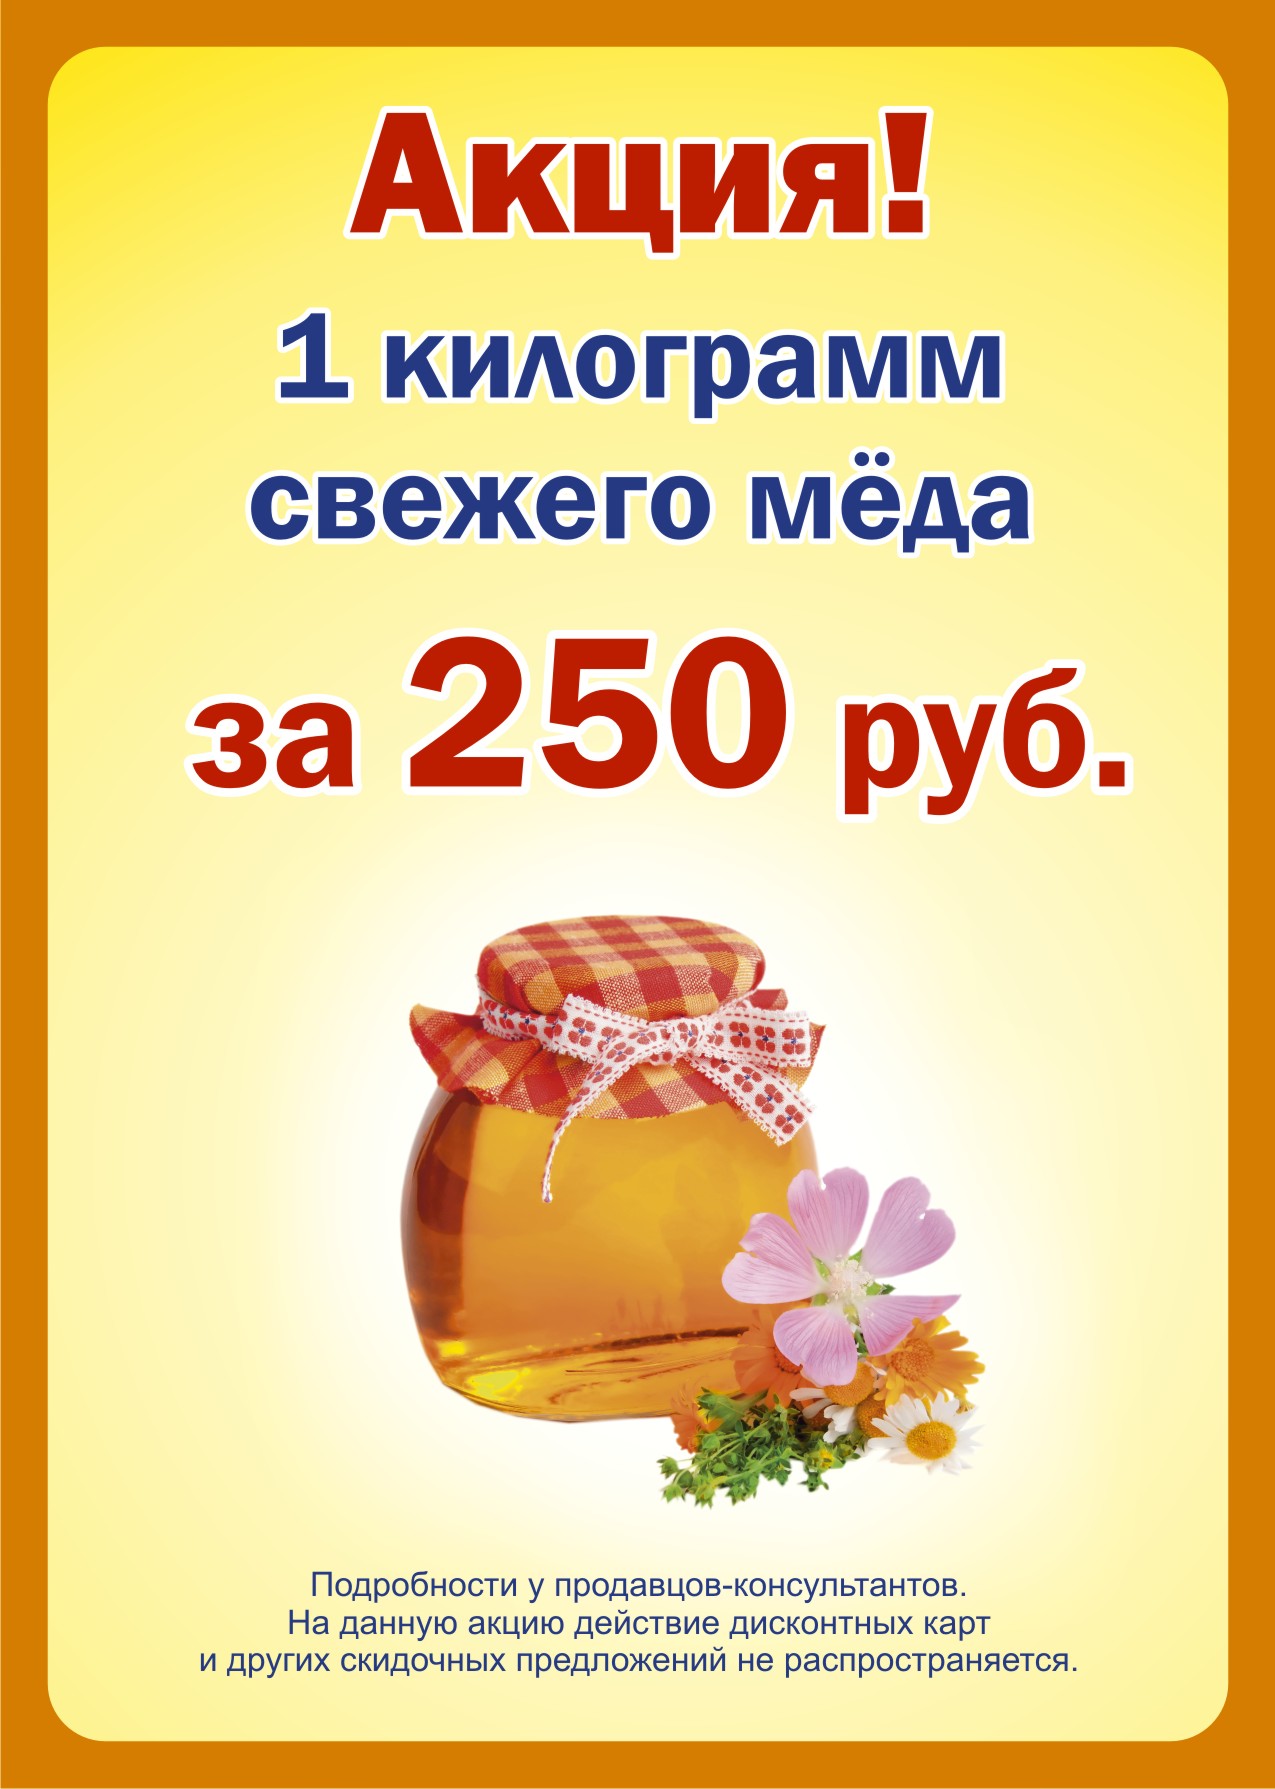 Купить мед 1 кг